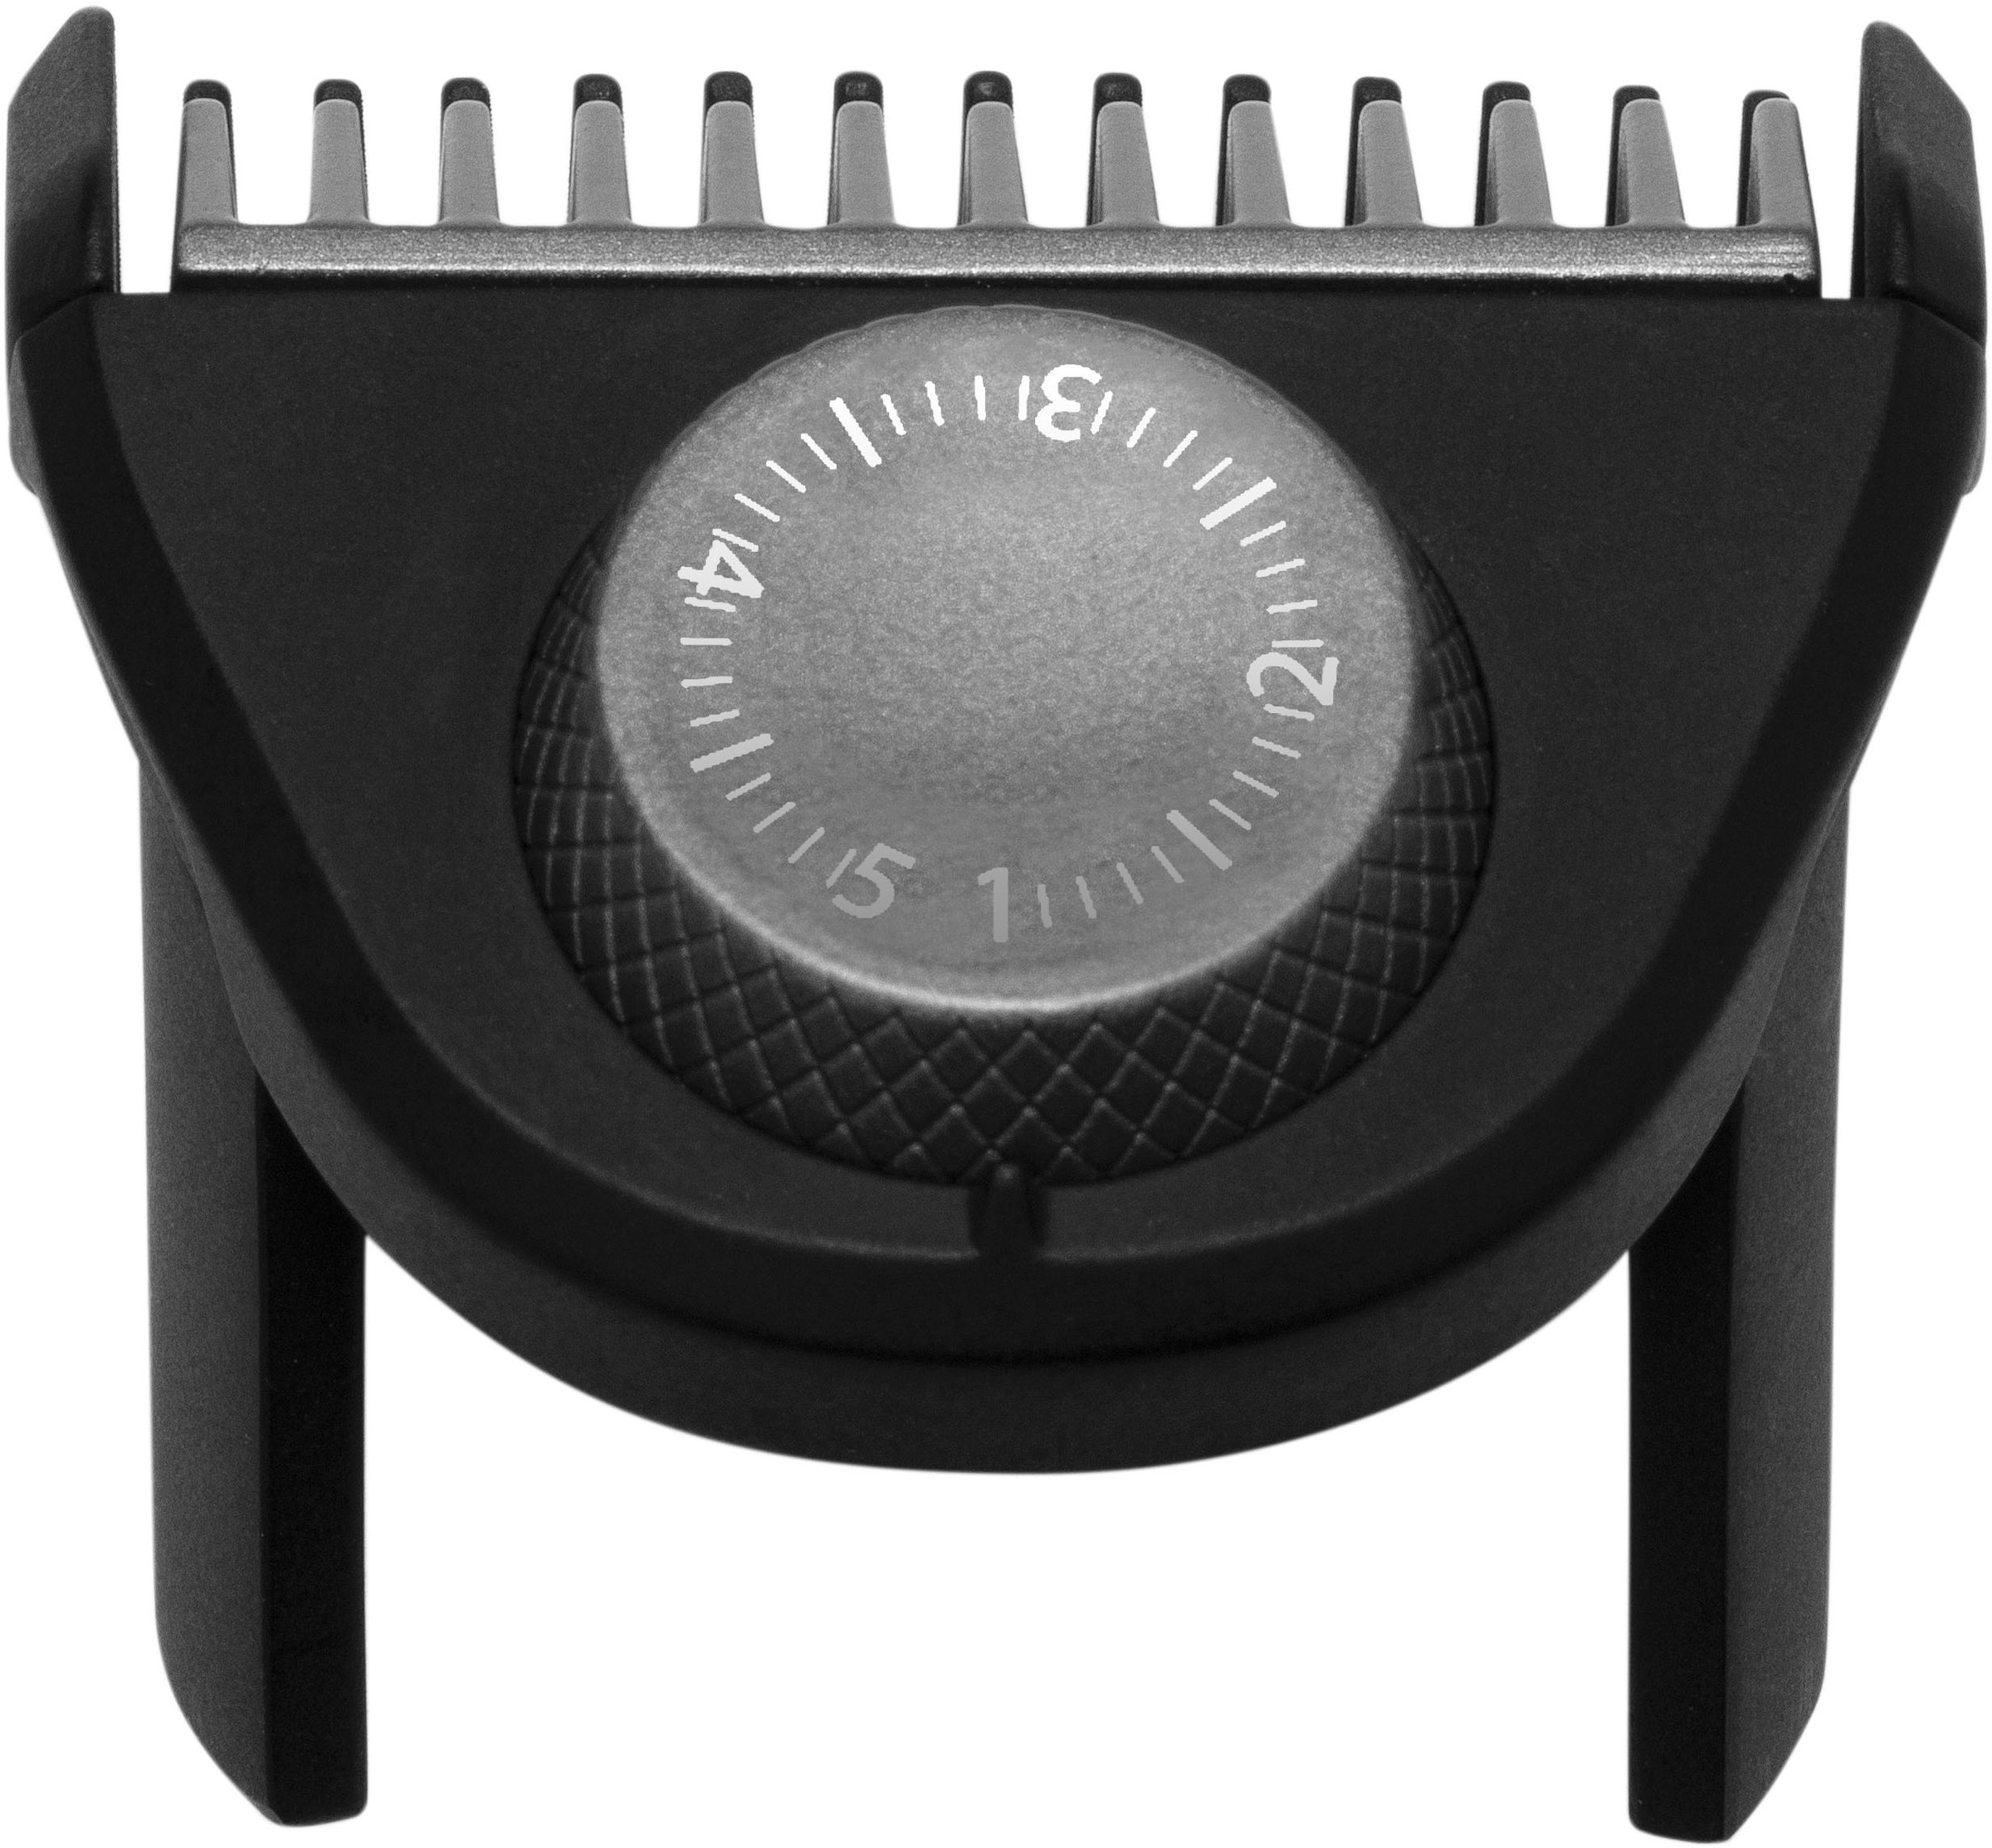 Remington Haarschneider »Power-X Series HC6000«, 4 Aufsätze, Längeneinstellrad und Micro Fade Haar-und Bartkamm, kpl. Abwaschbar